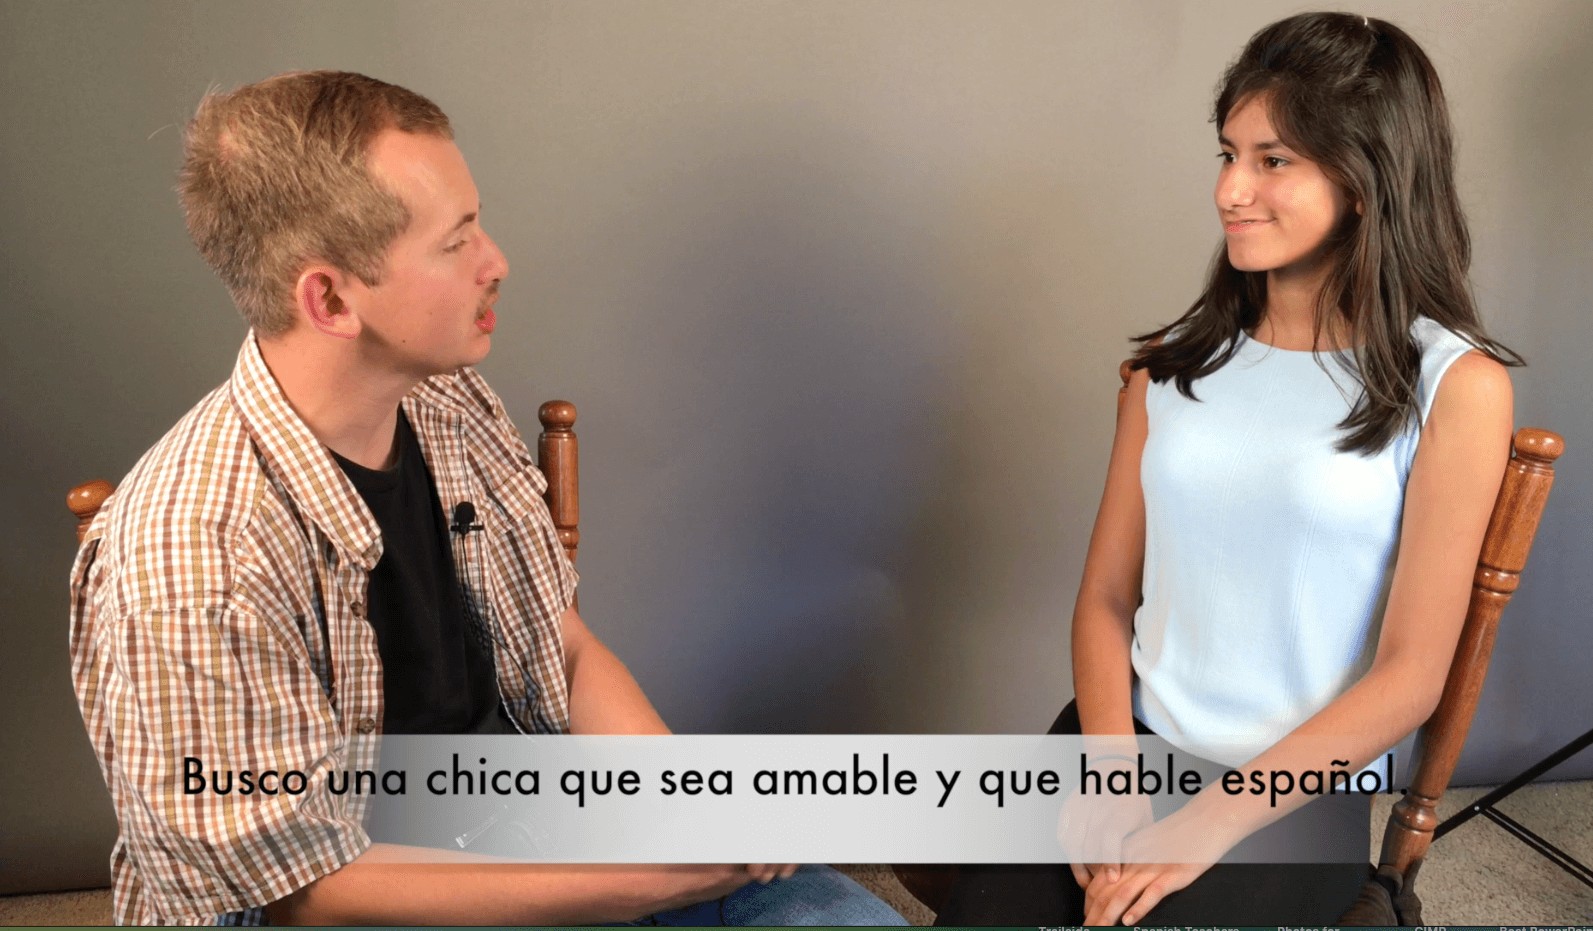 Spanish Subjunctive Las cláusulas adjetivales Video Busco una chica que sea amable y que hable español.